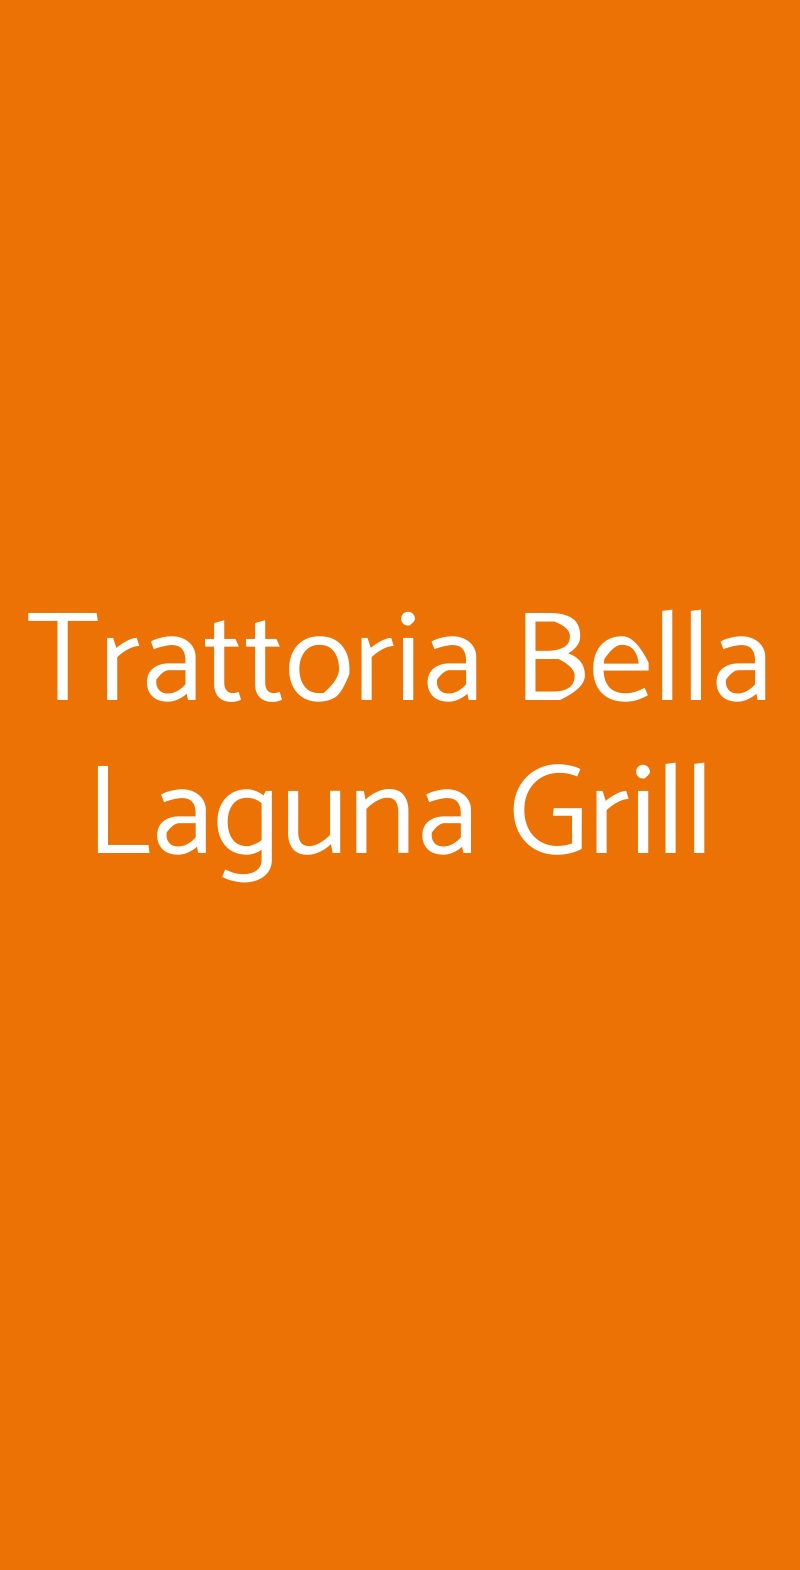 Trattoria Bella Laguna Grill Chioggia menù 1 pagina